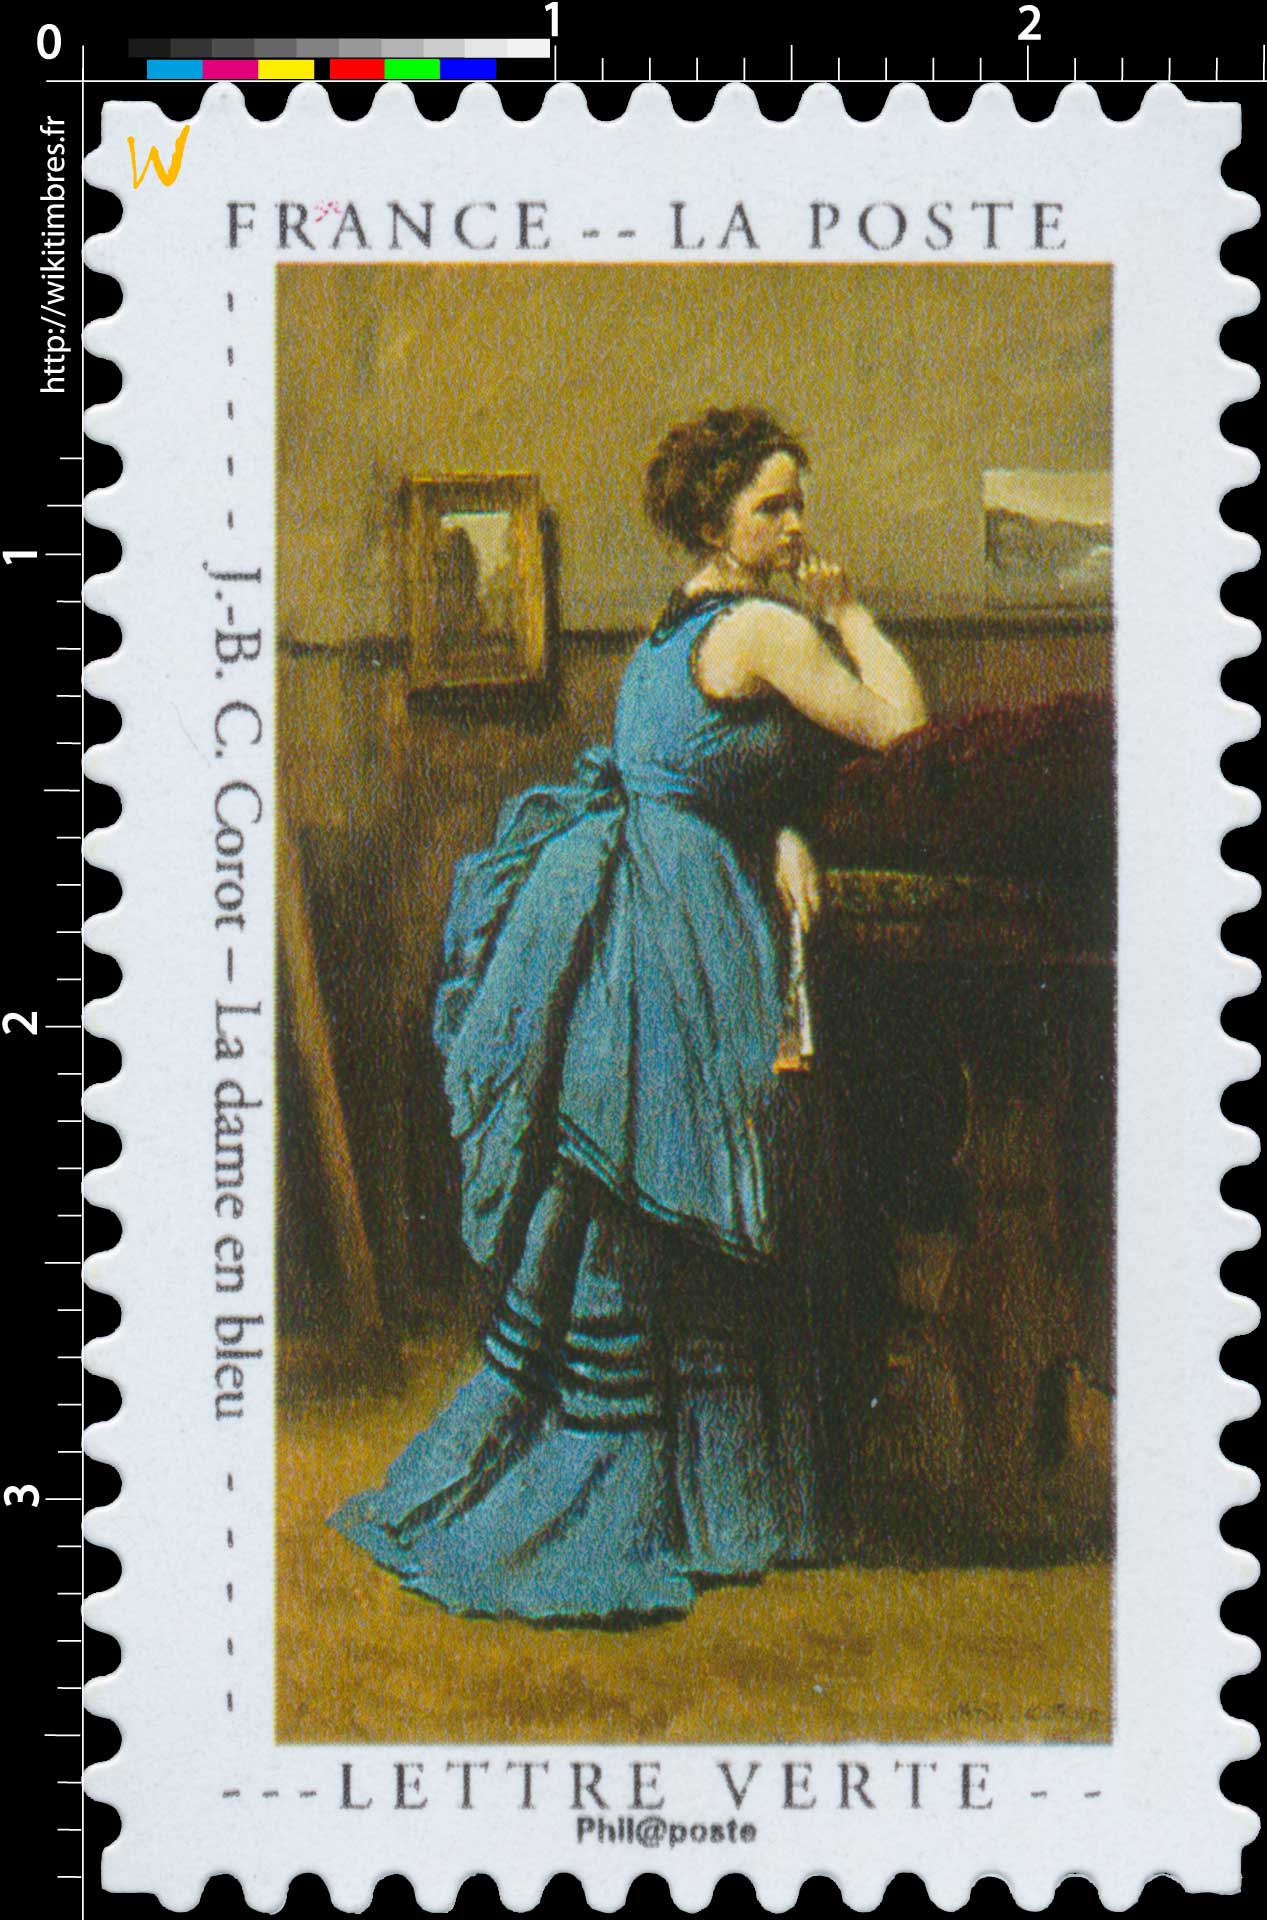 2020 J.-B. C. Corot – La dame en bleu